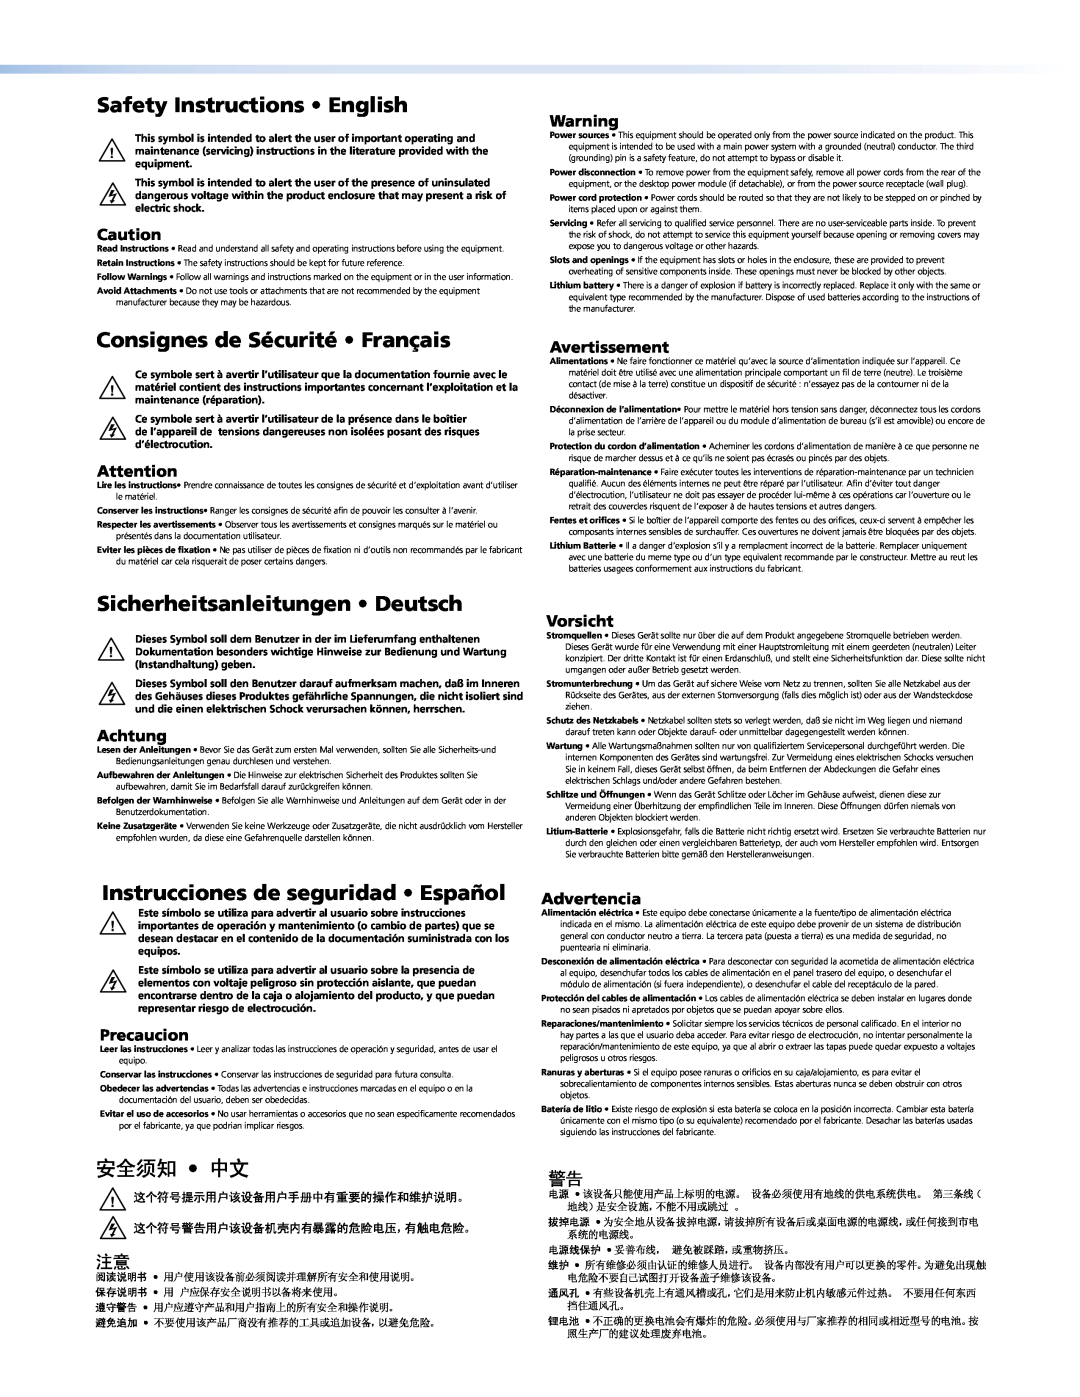 Extron electronic 101 PLUS manual Safety Instructions • English, Consignes de Sécurité • Français, 安全须知 • 中文, Avertissement 